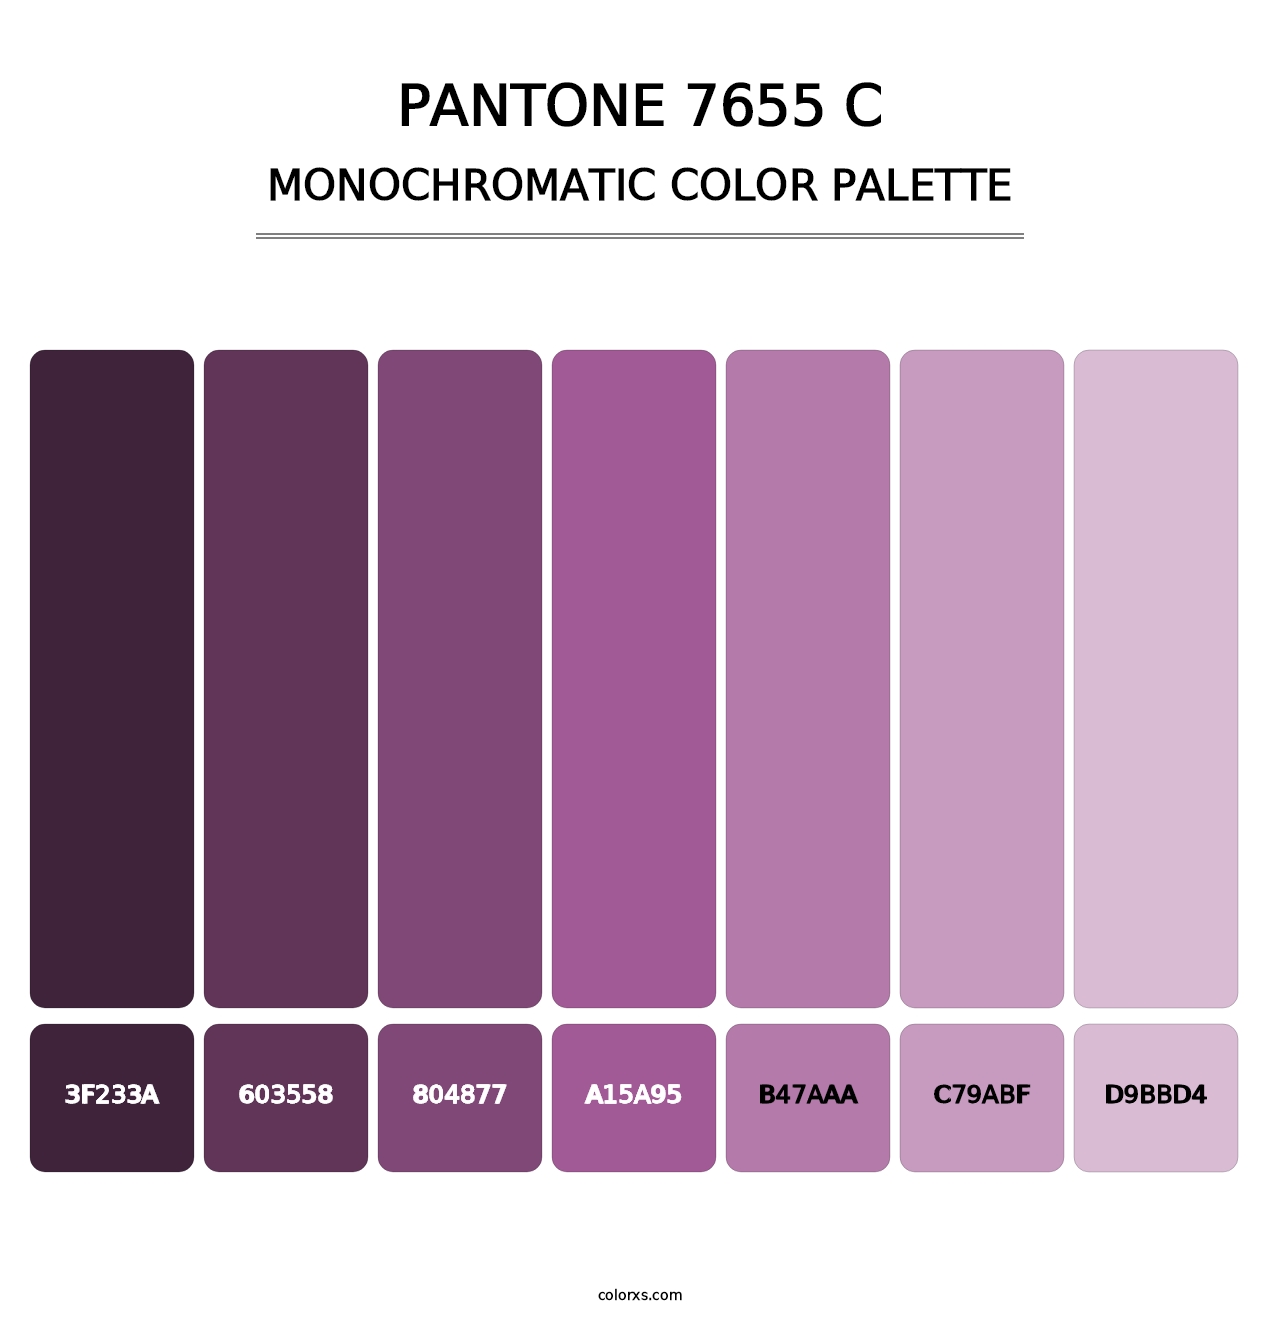 PANTONE 7655 C - Monochromatic Color Palette